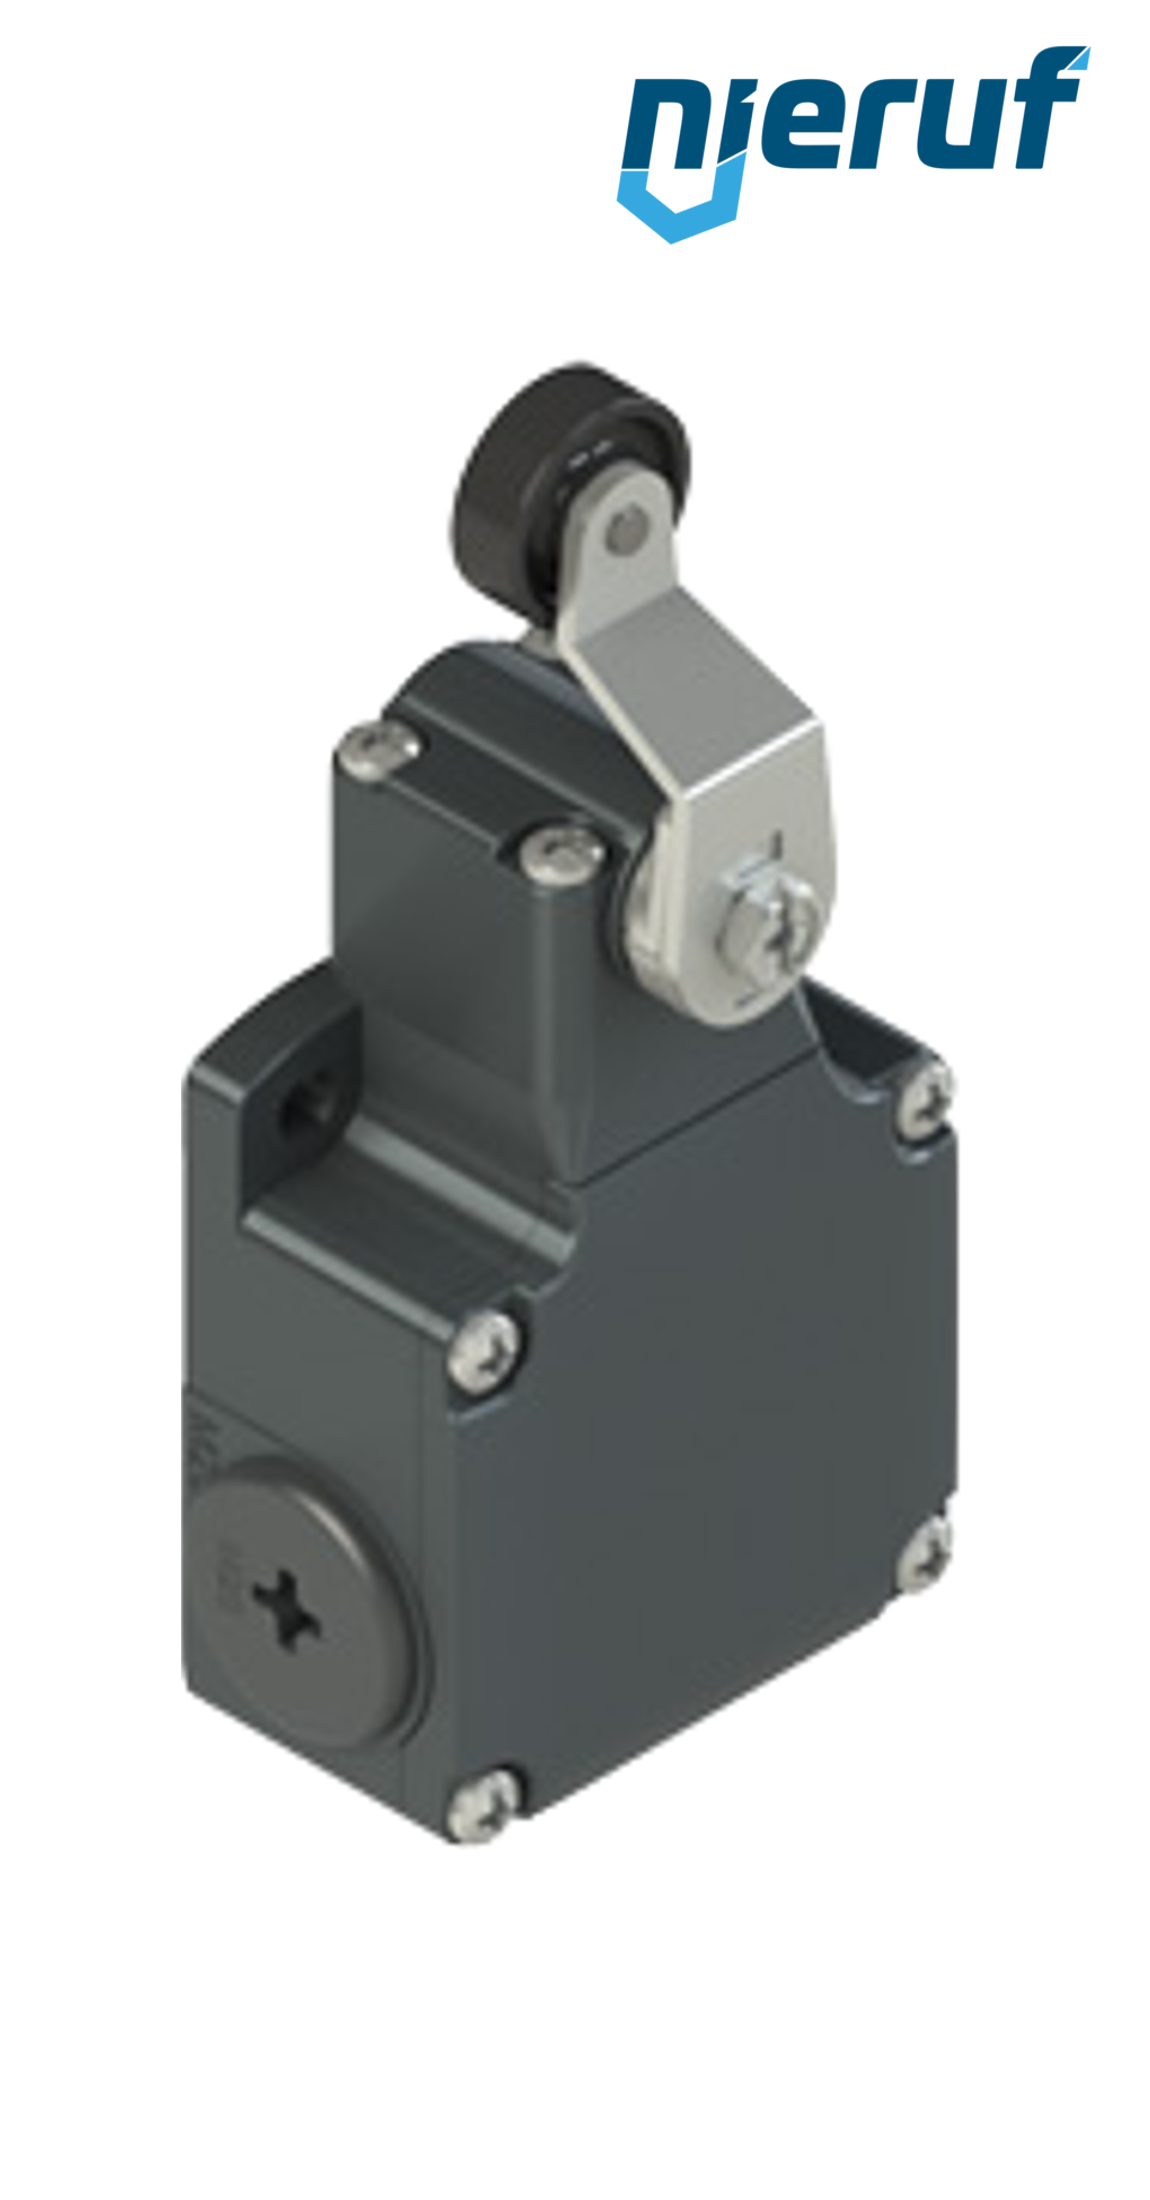 Positionsschalter FL551 PR04 für pneumatische Stoffschieber Typ SR Nennweite DN50 bis DN150